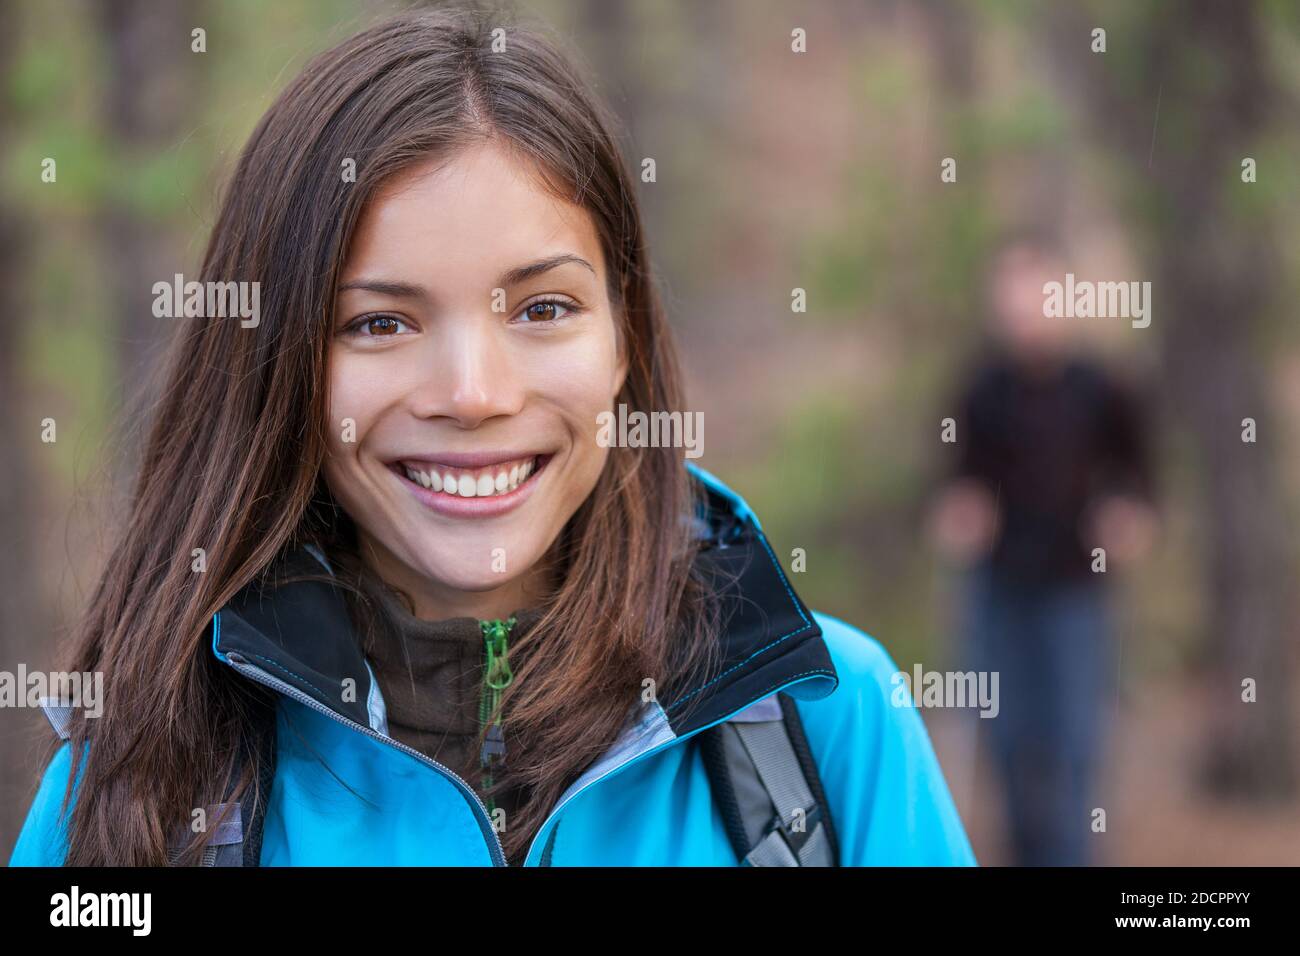 Femme en bonne santé randonnée à l'extérieur. Bonne jeune fille randonneur marchant dans les bois avec un groupe d'amis. Touriste chinois souriant. Banque D'Images